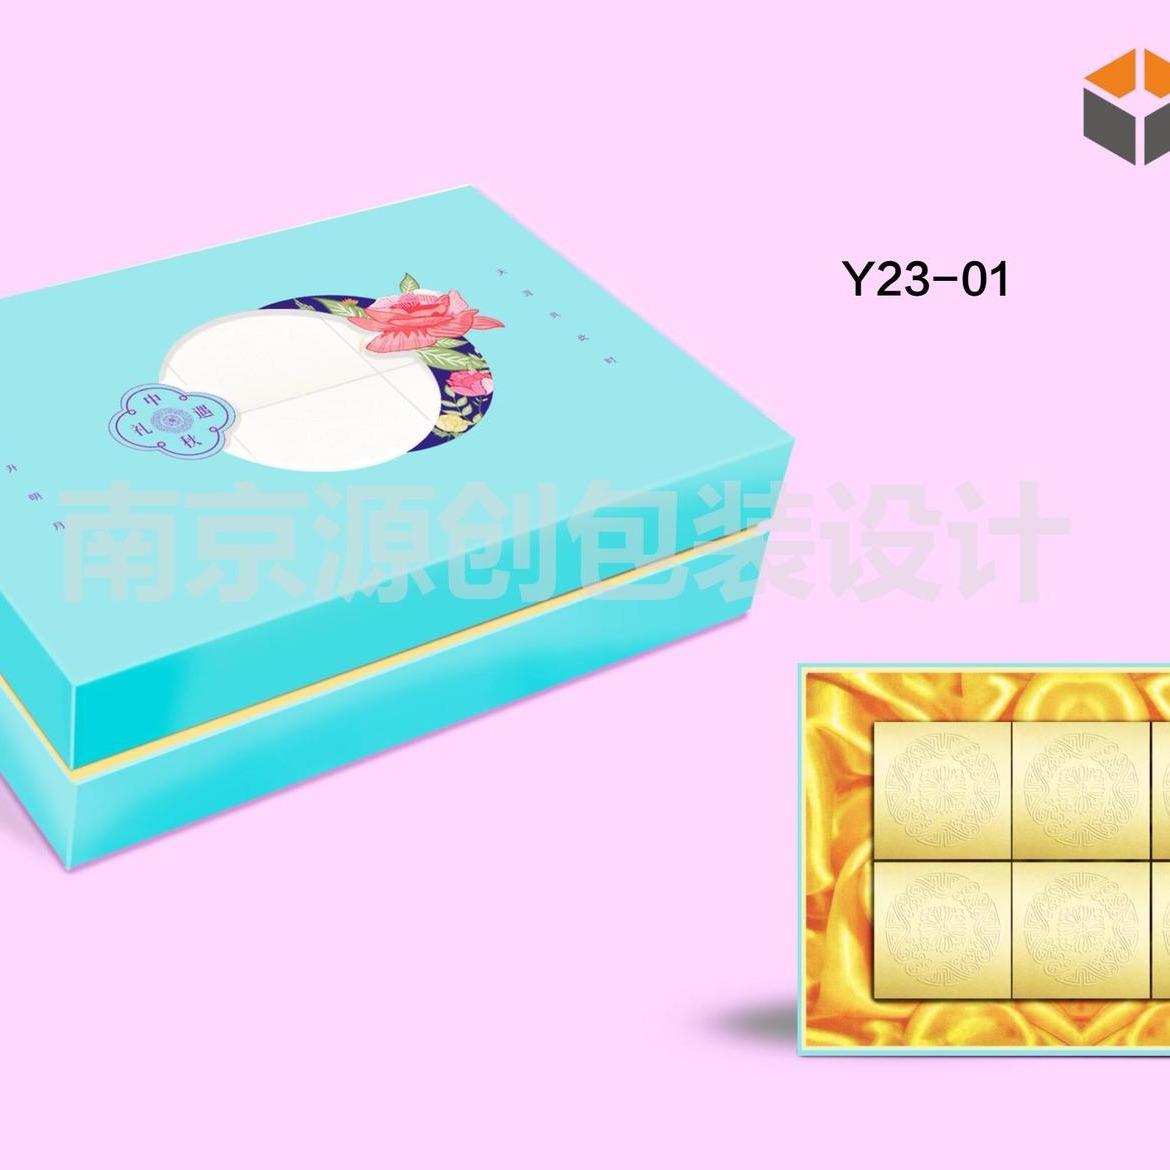 月饼盒订做 月饼盒定做 南京月饼包装盒 月饼包装礼盒 专业生产加工月饼盒 月饼礼盒厂家